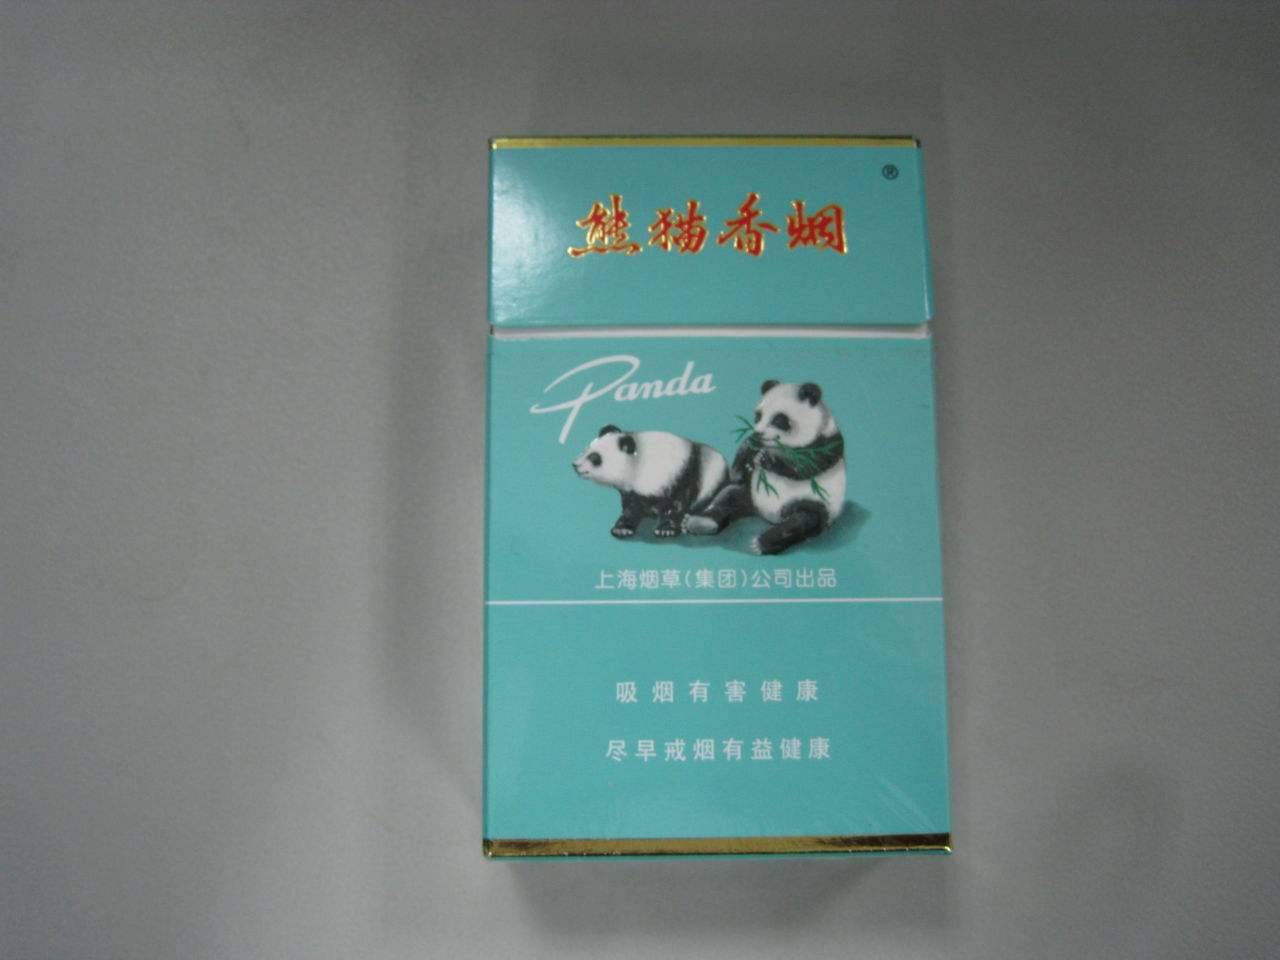 熊貓香菸